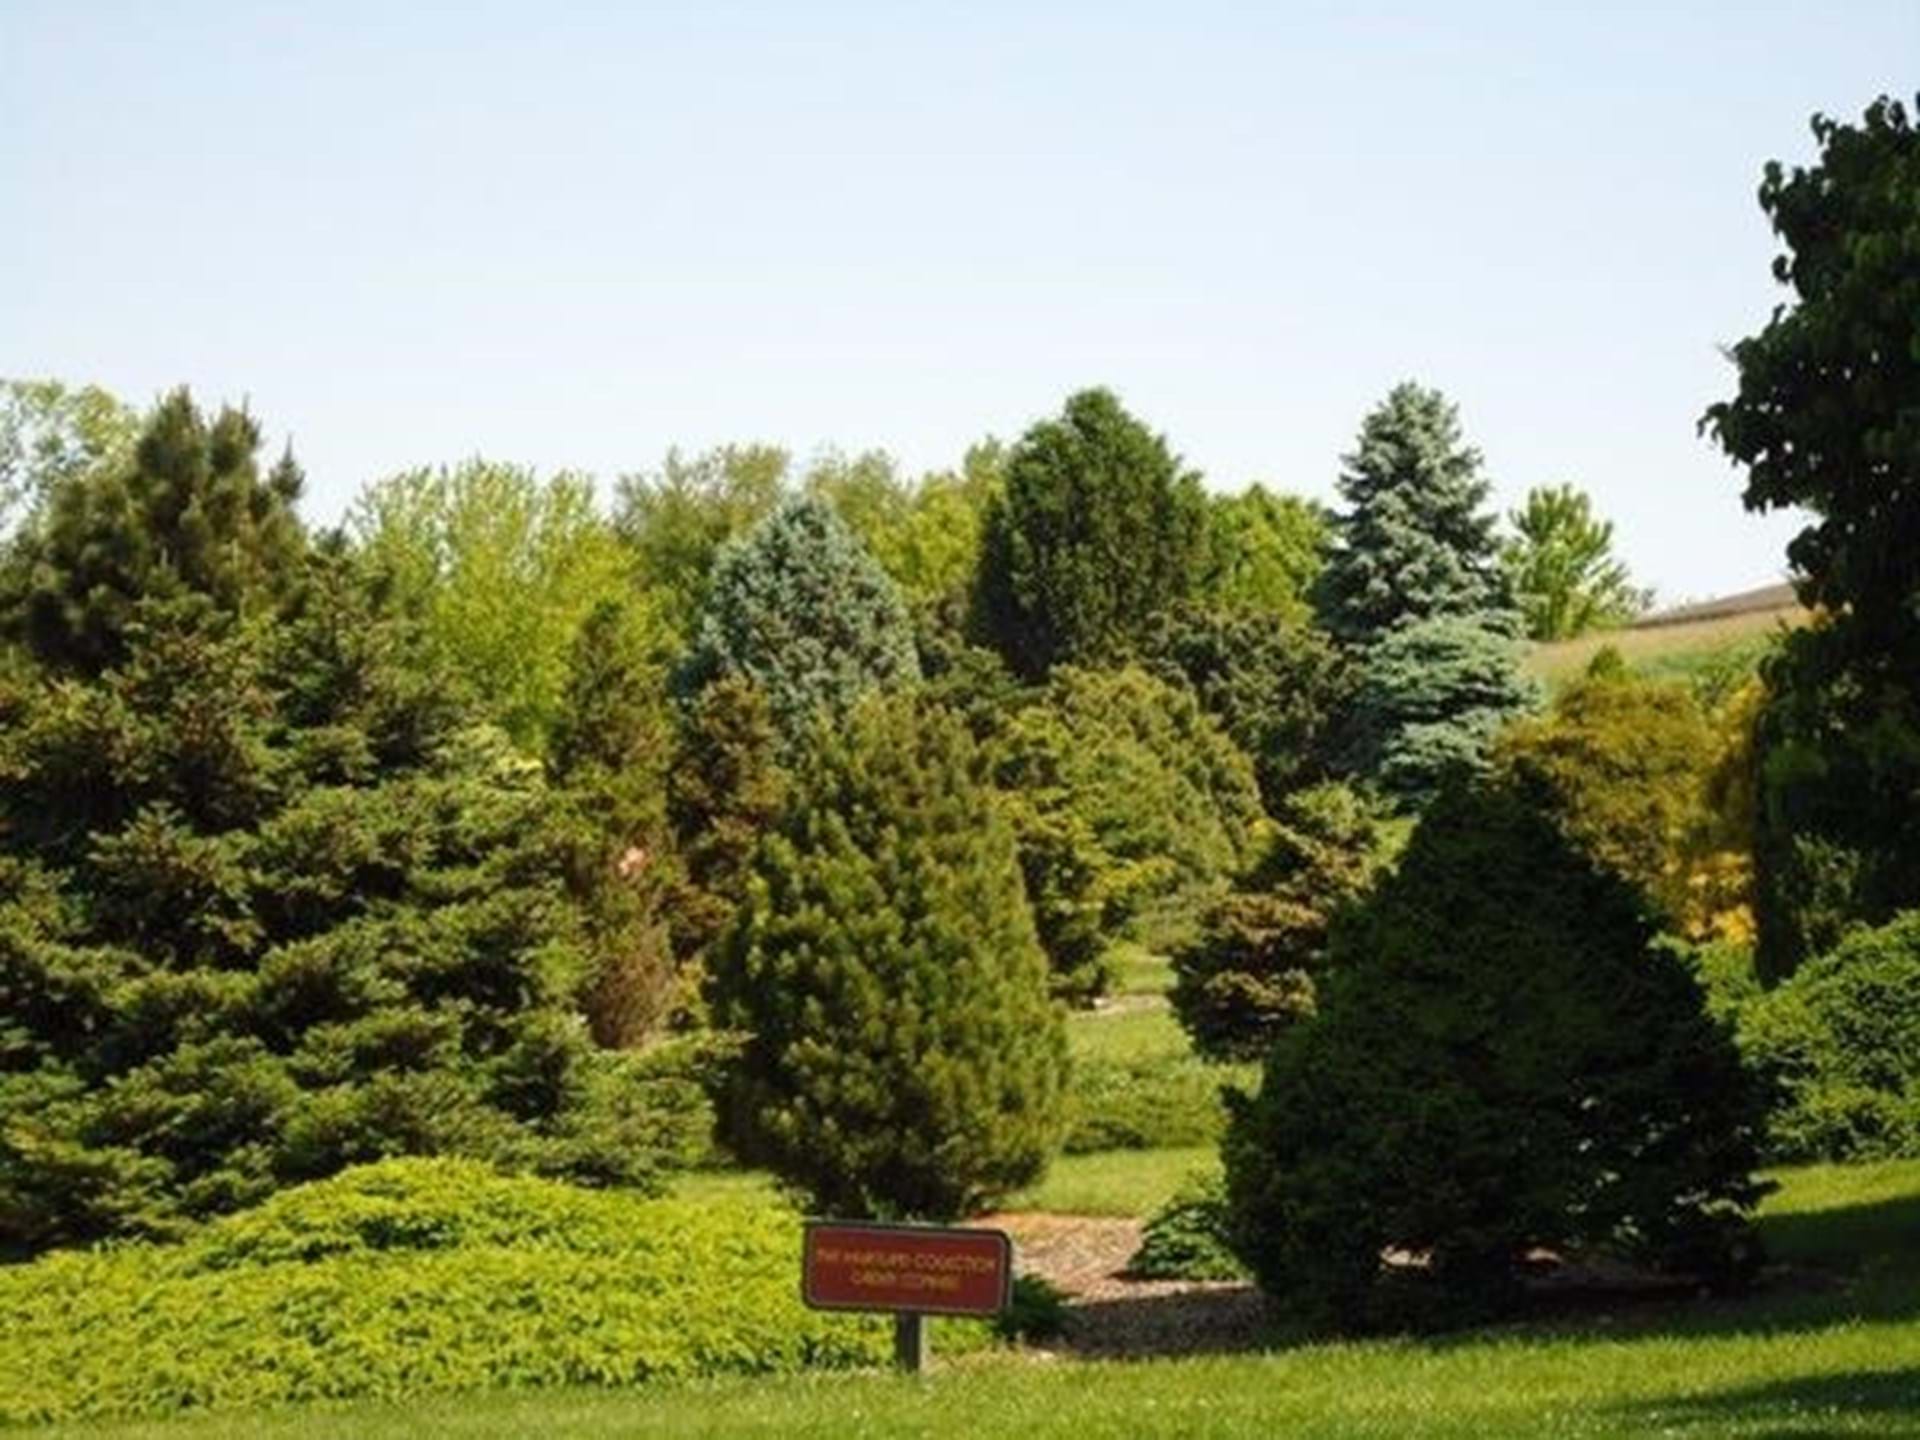 Bickelhaupt Arboretum view